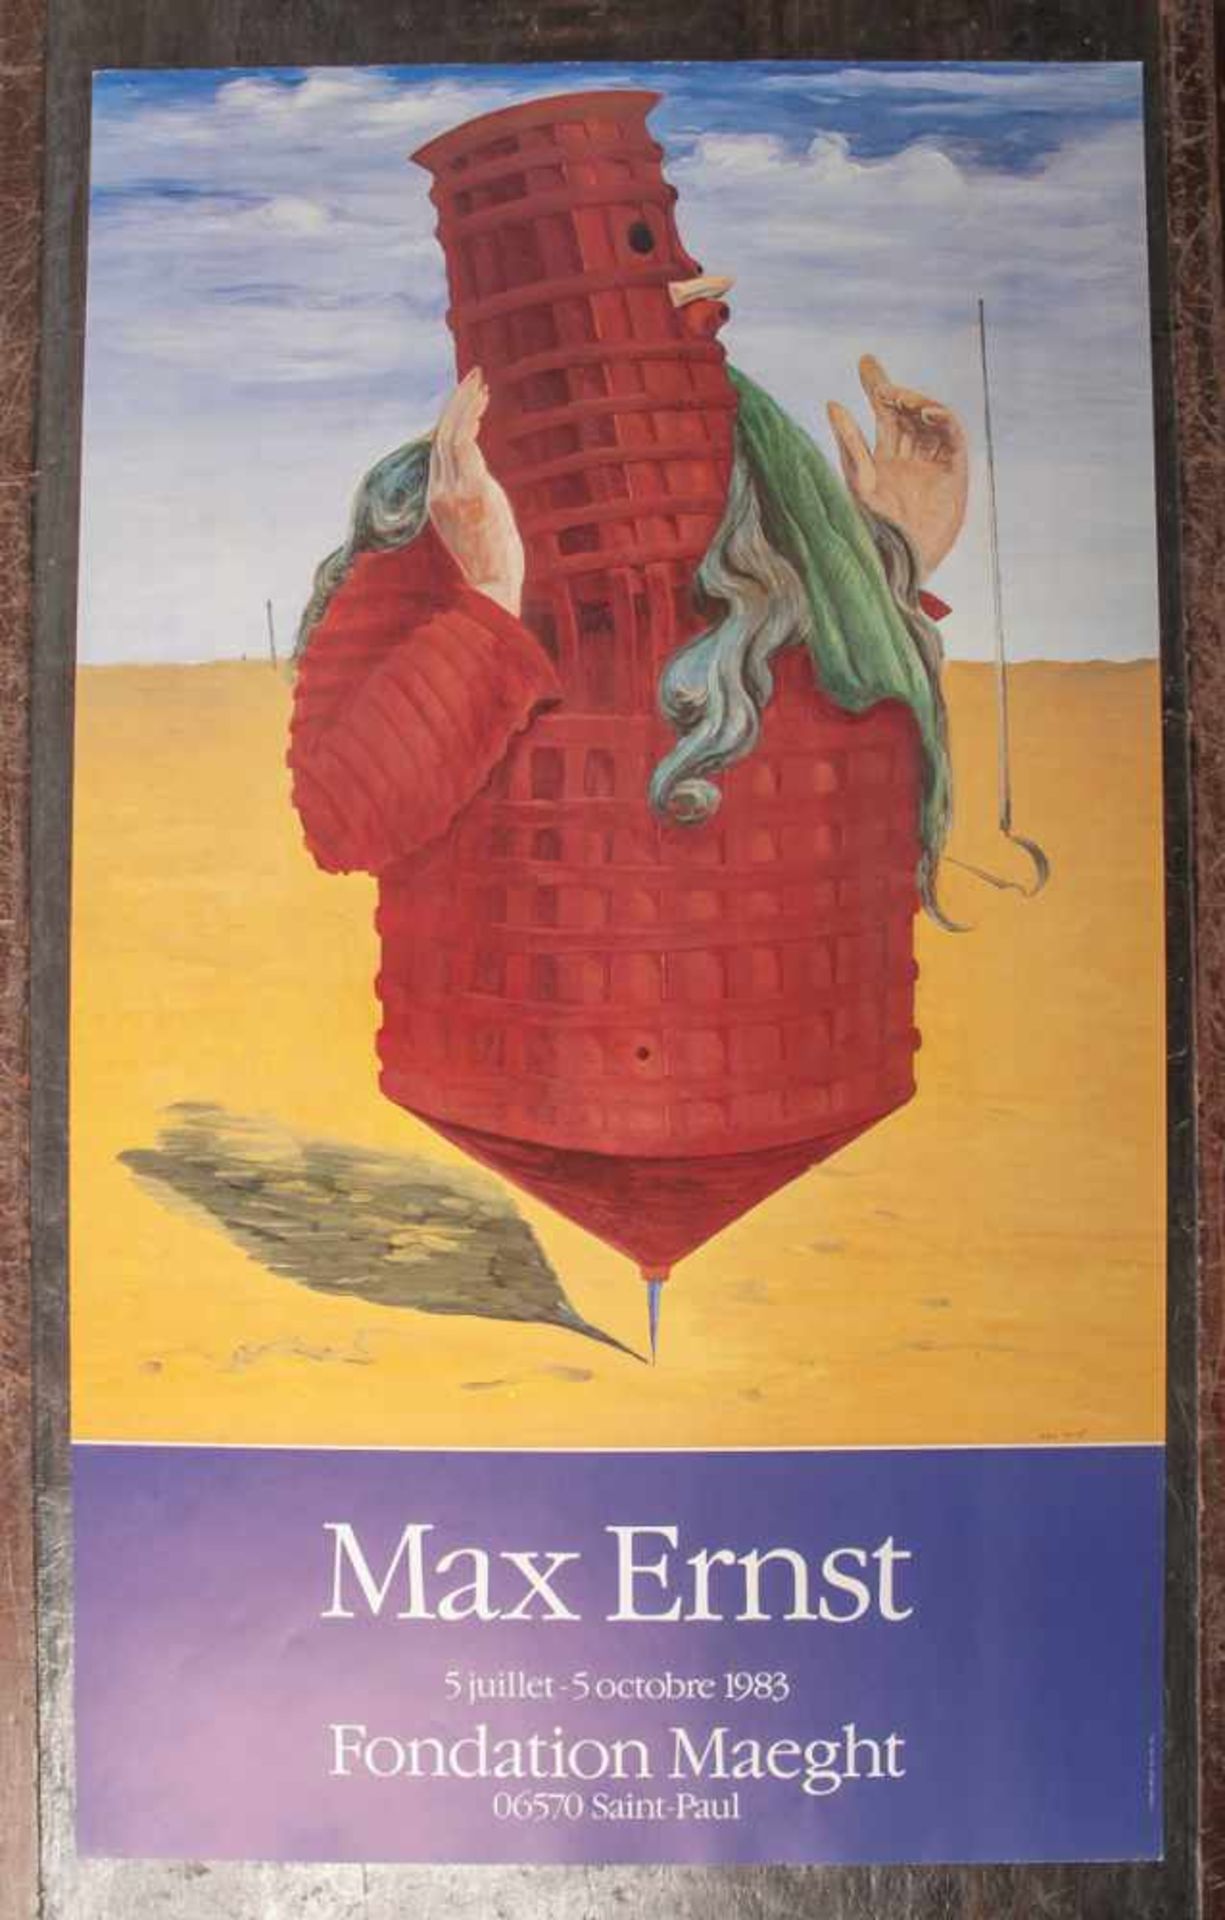 Ernst, Max (1891 - 1976), Ausstellungsplakat für Ernst-Ausstellung in der Fondation Maeghtin Saint-